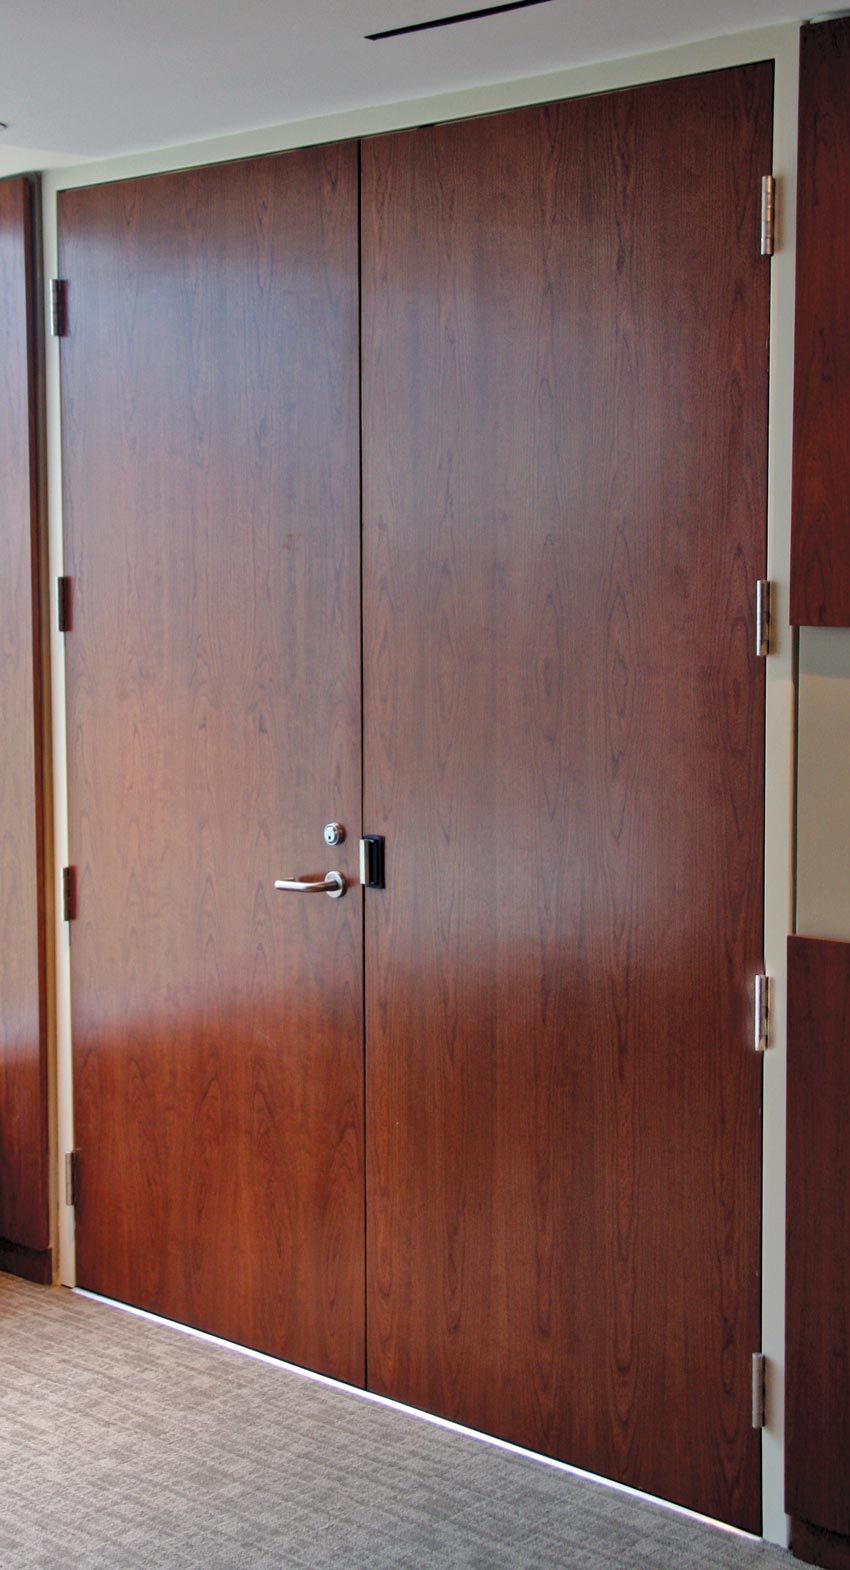 Photo of an acoustic wood door.